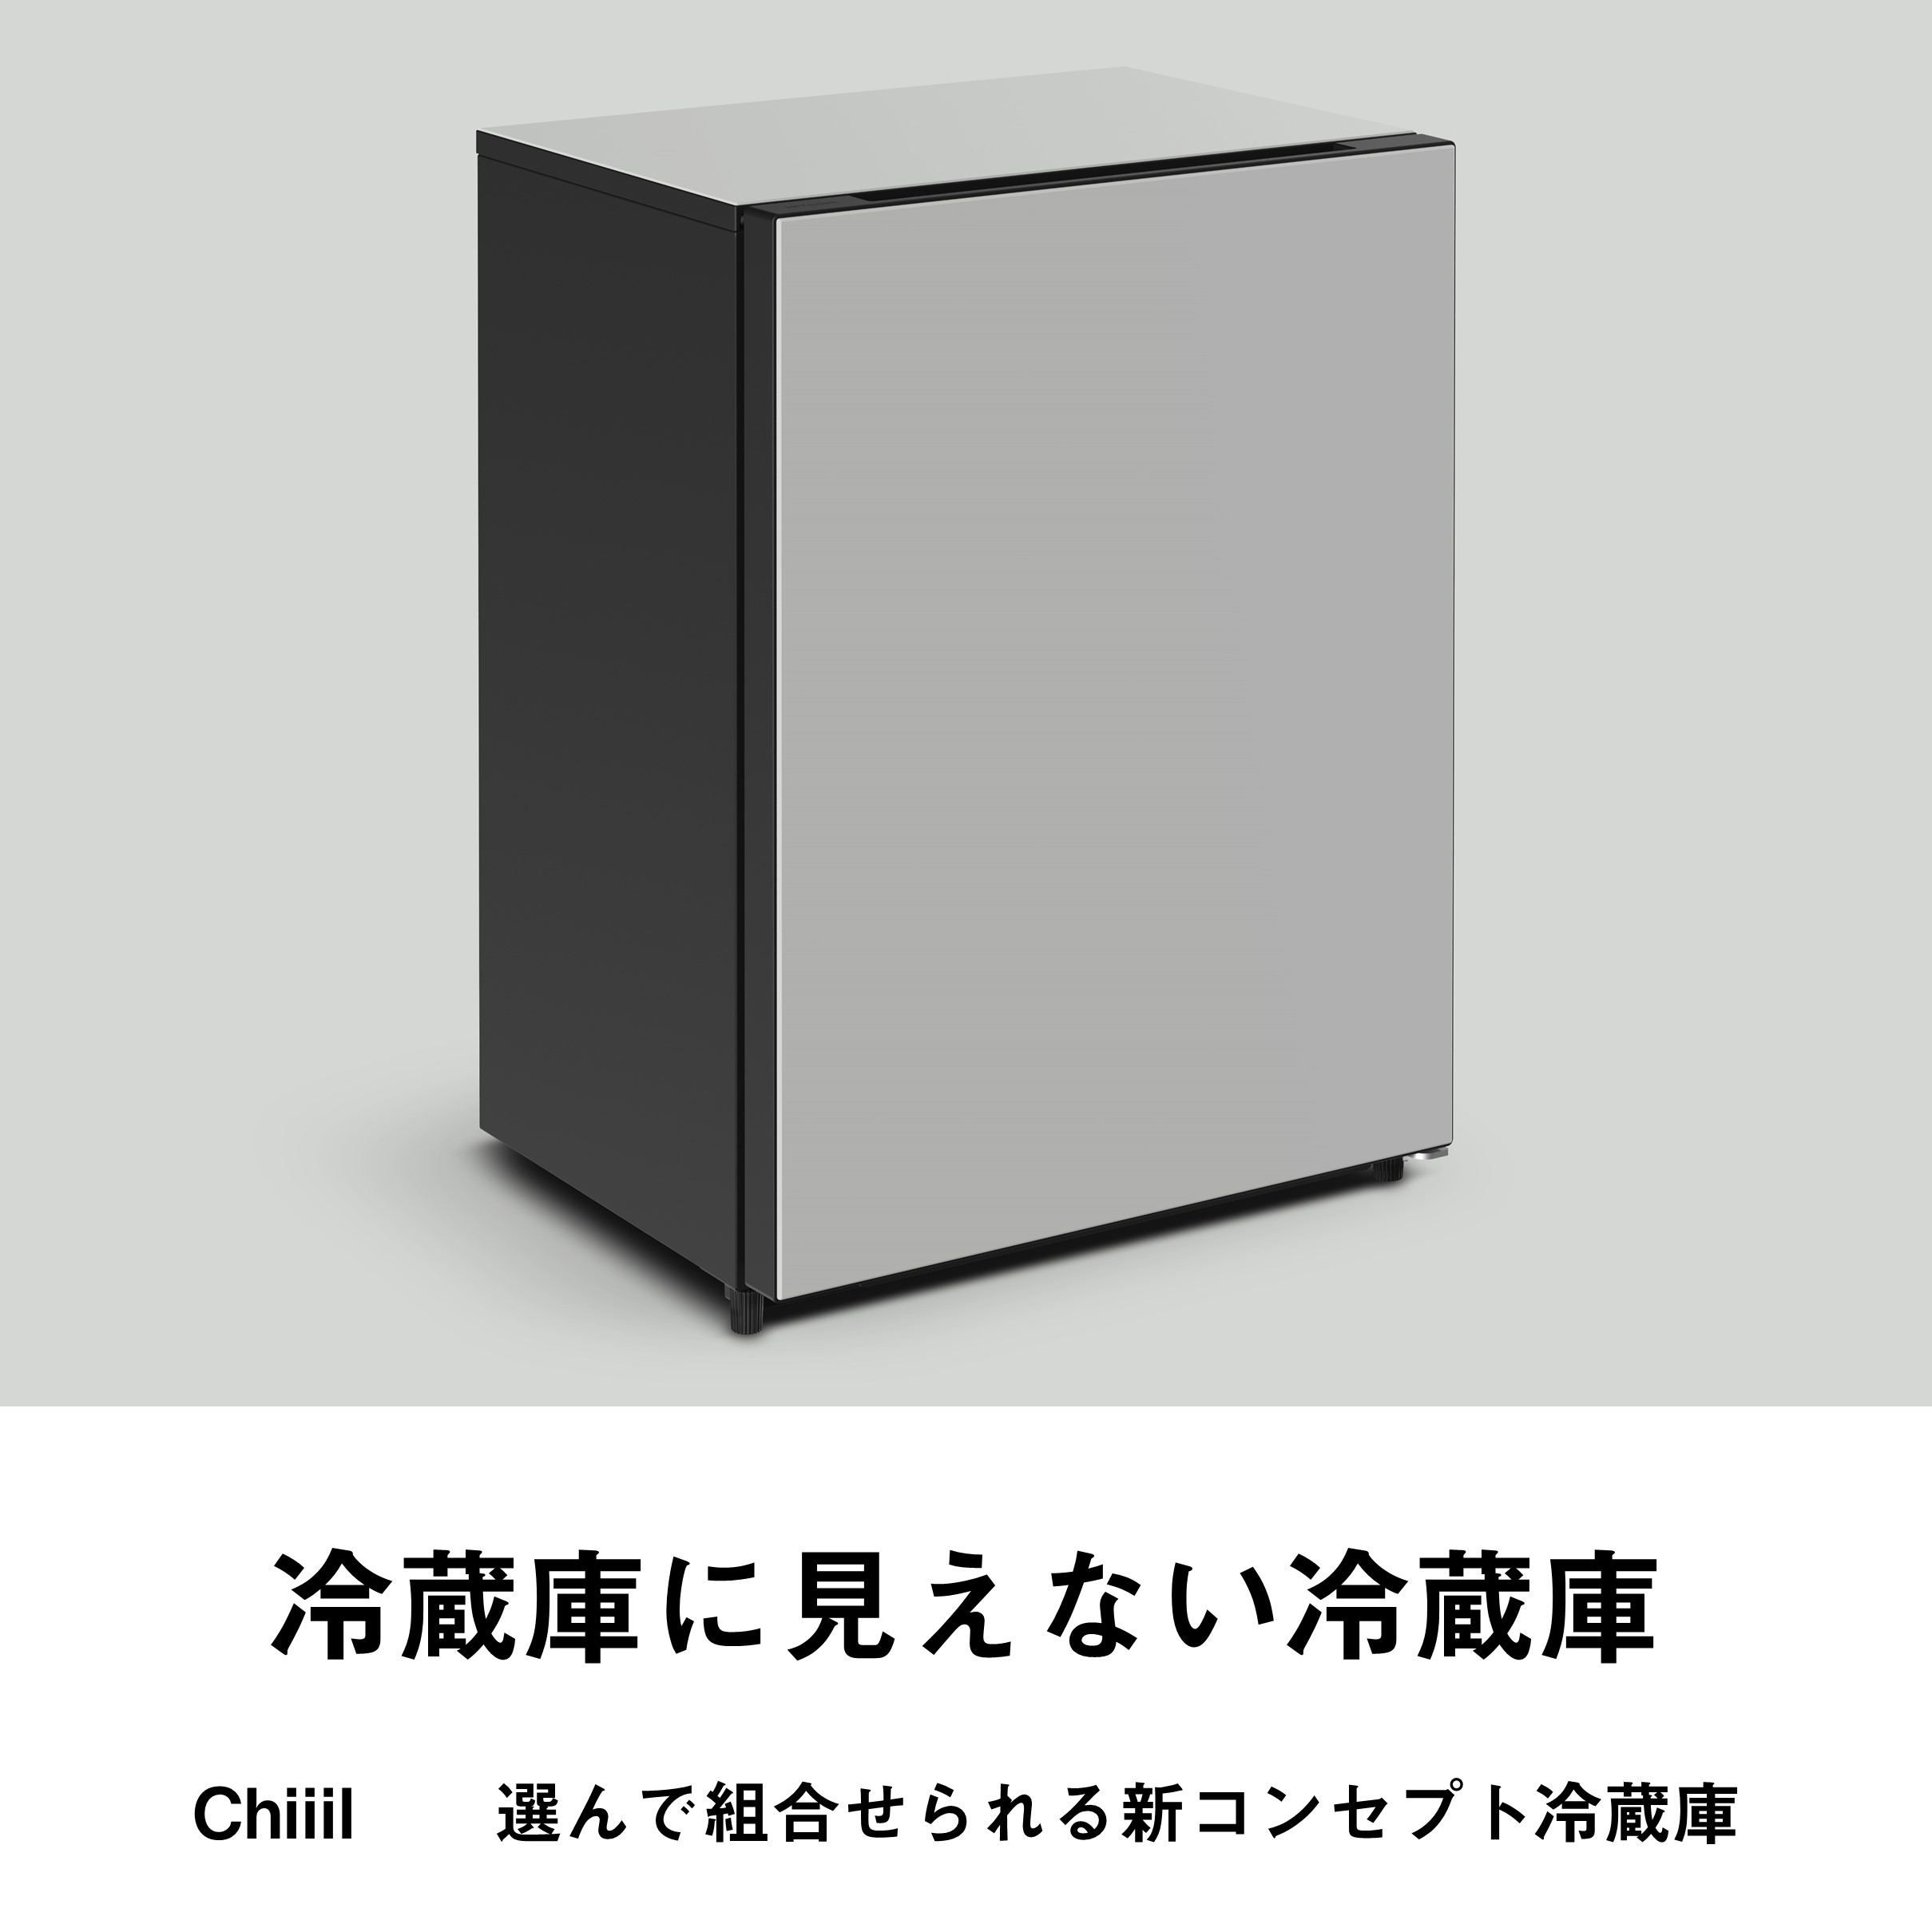 Chiiil / 選んで組合せられる新コンセプト冷蔵庫